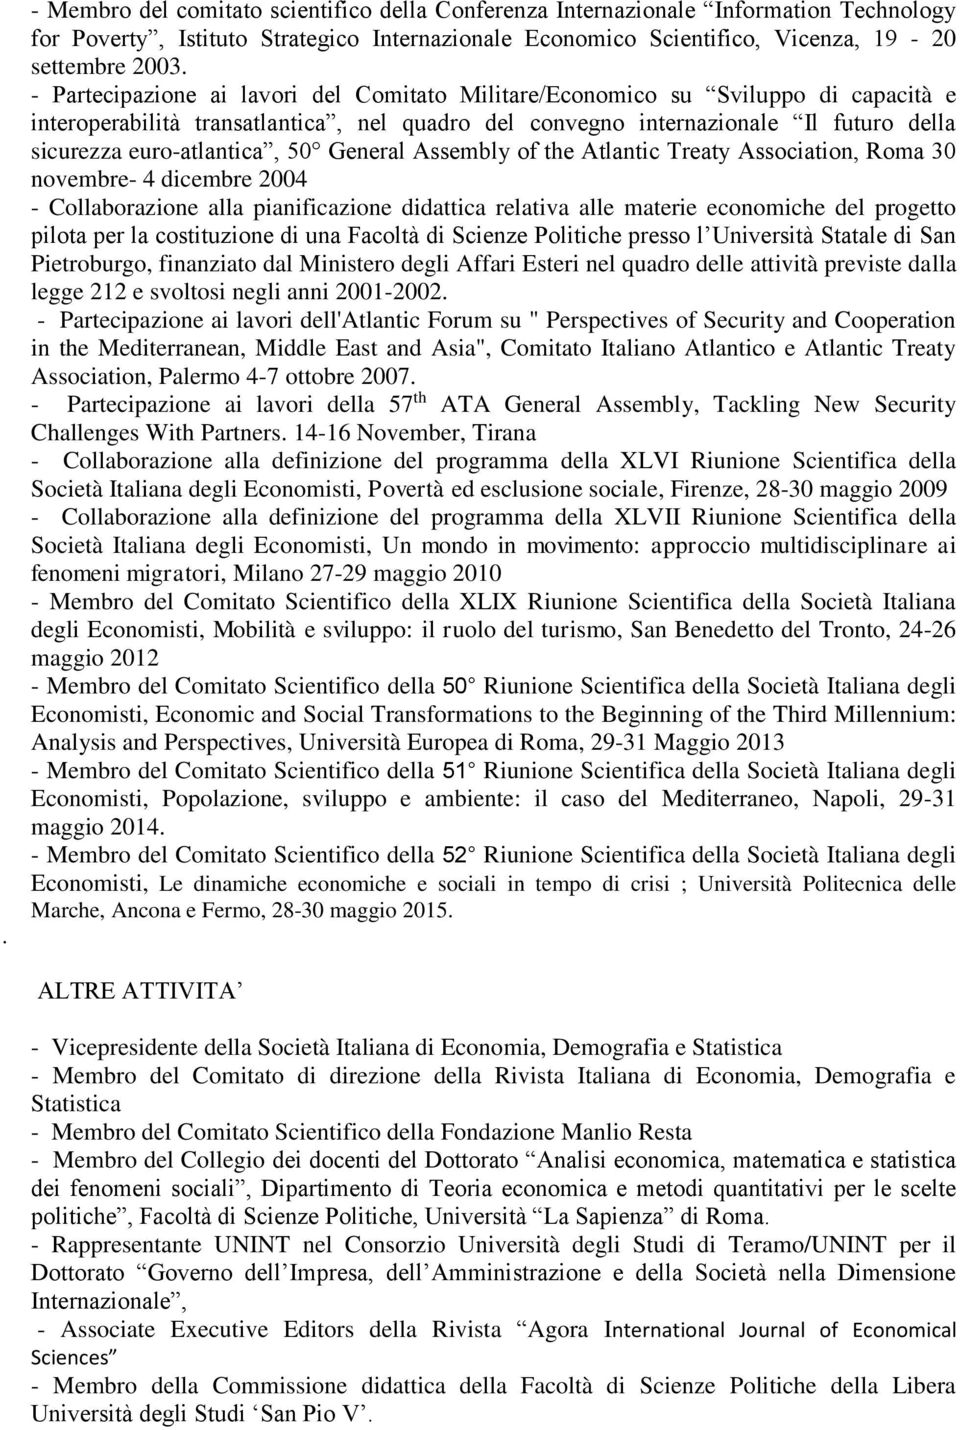 50 General Assembly of the Atlantic Treaty Association, Roma 30 novembre- 4 dicembre 2004 - Collaborazione alla pianificazione didattica relativa alle materie economiche del progetto pilota per la